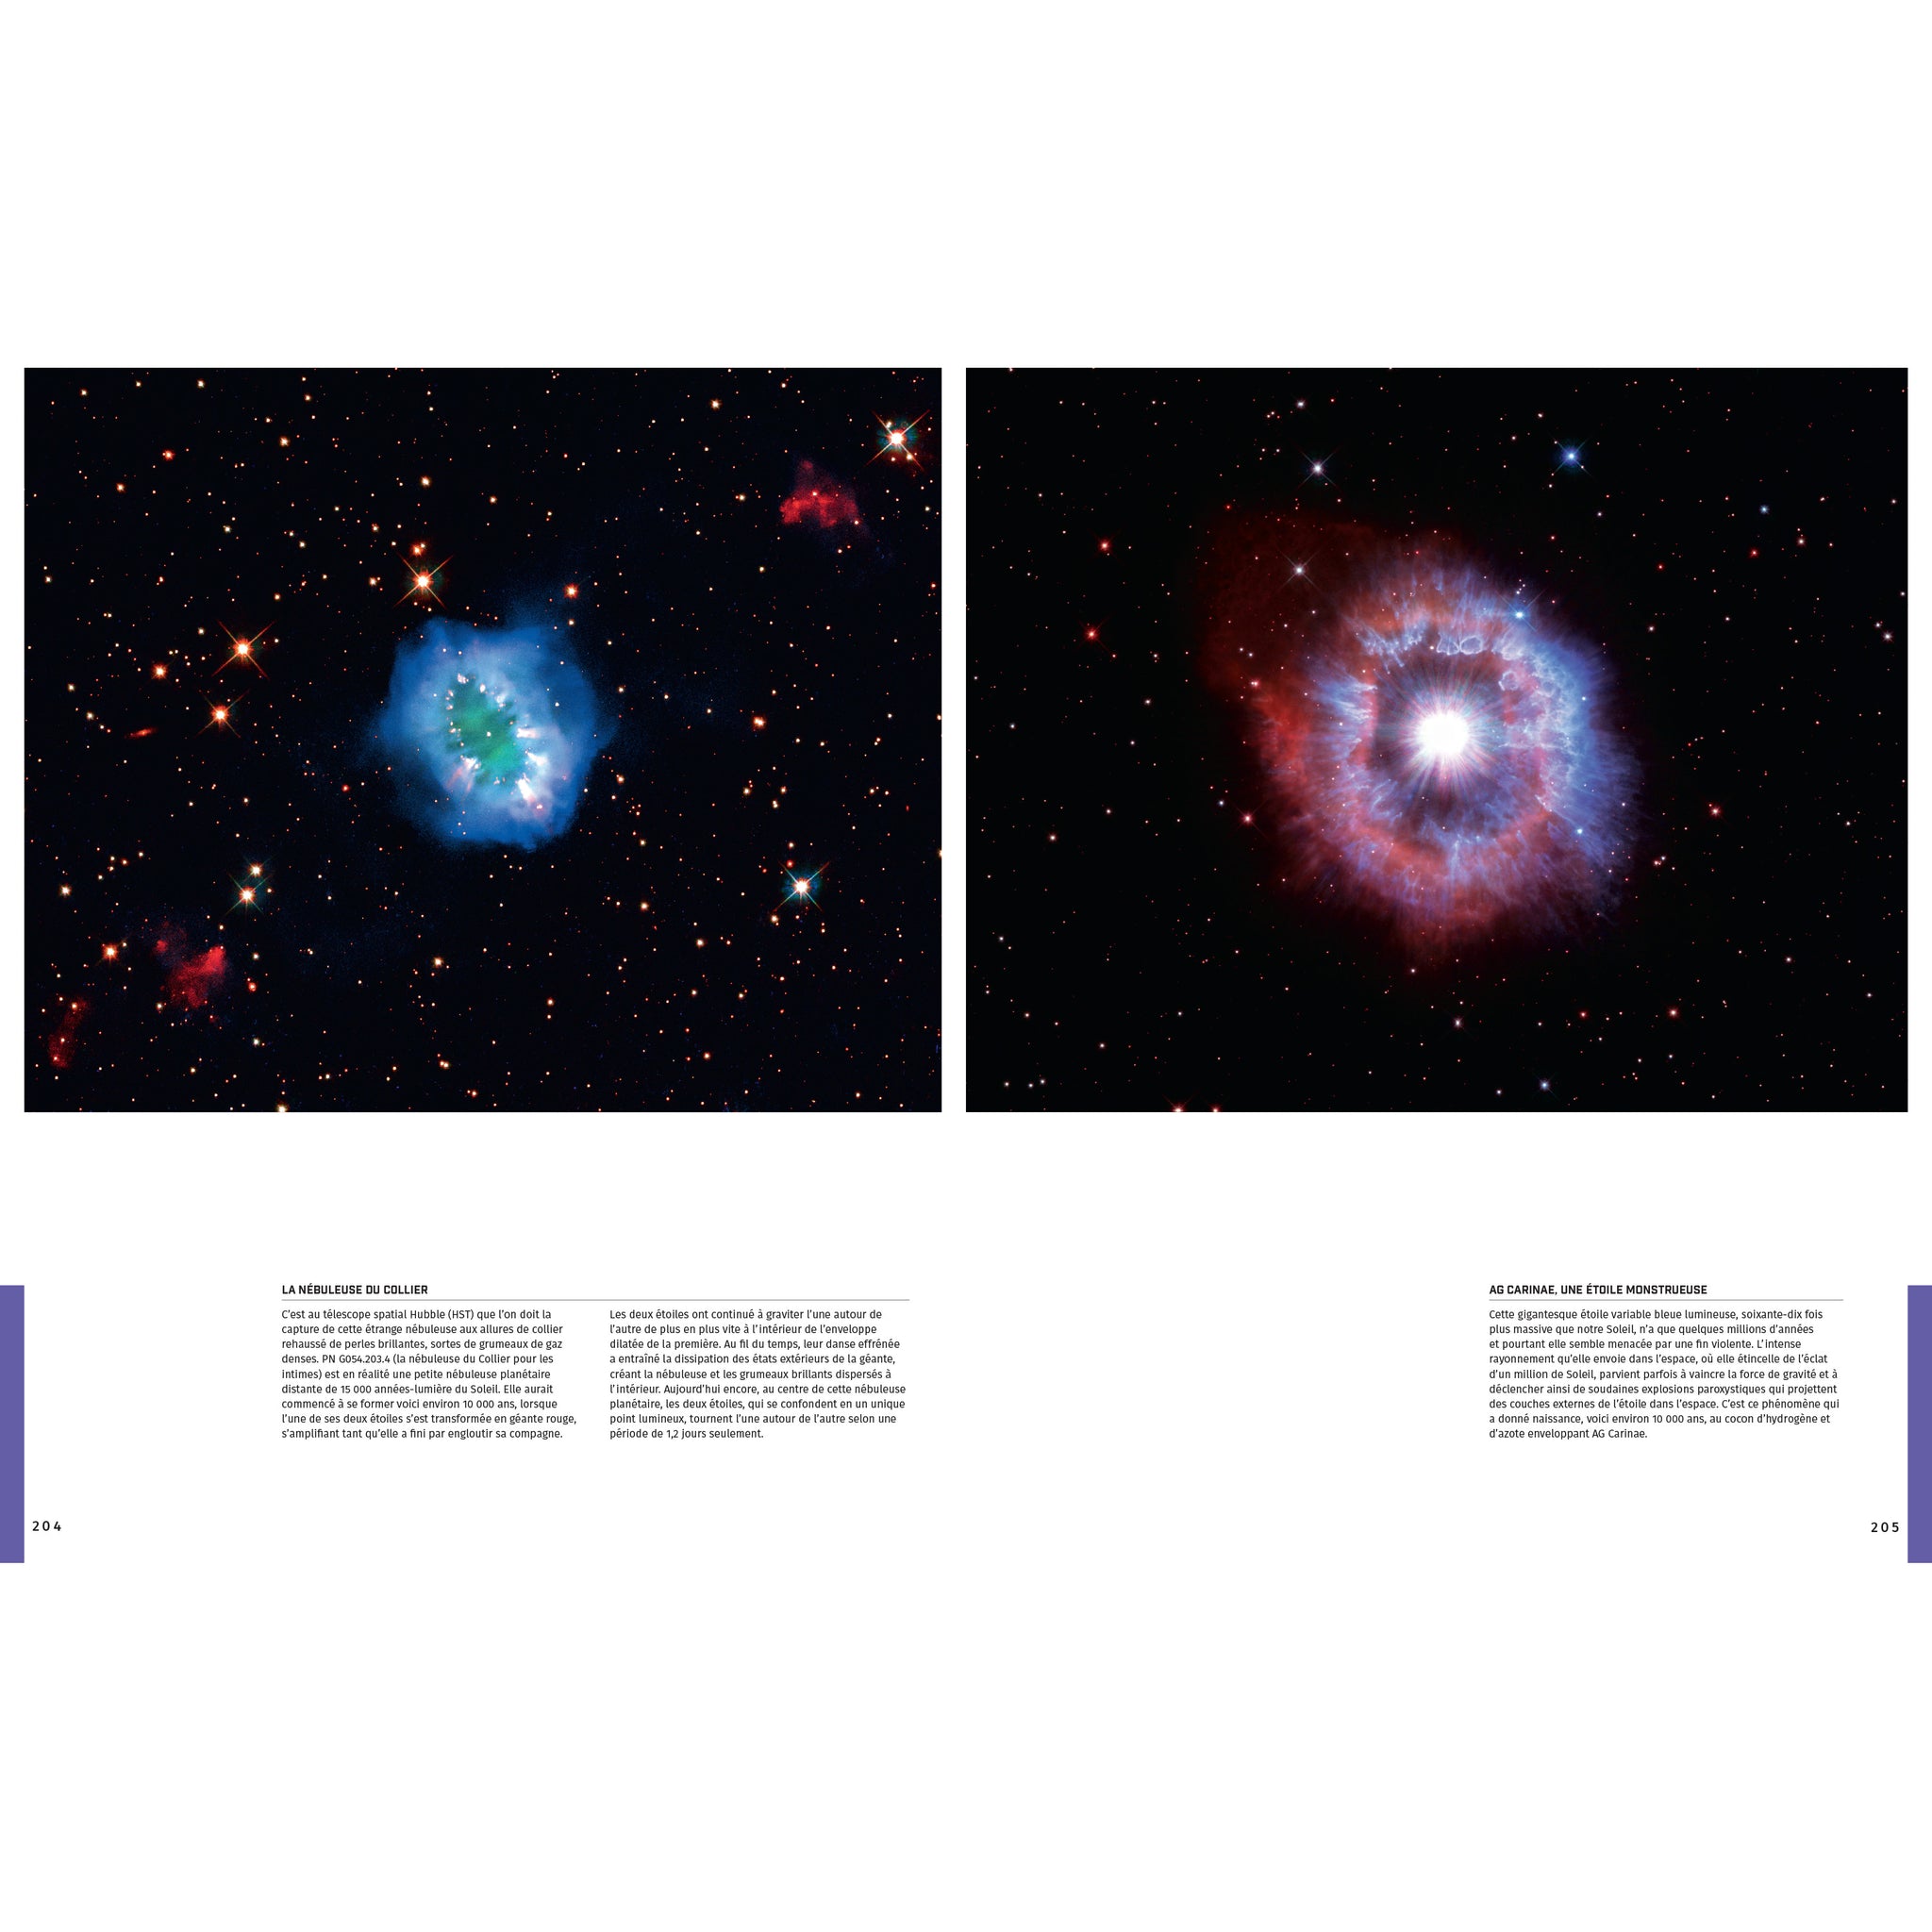 Univers - de l’oeil nu au télescope spatial infrarouge James-Webb